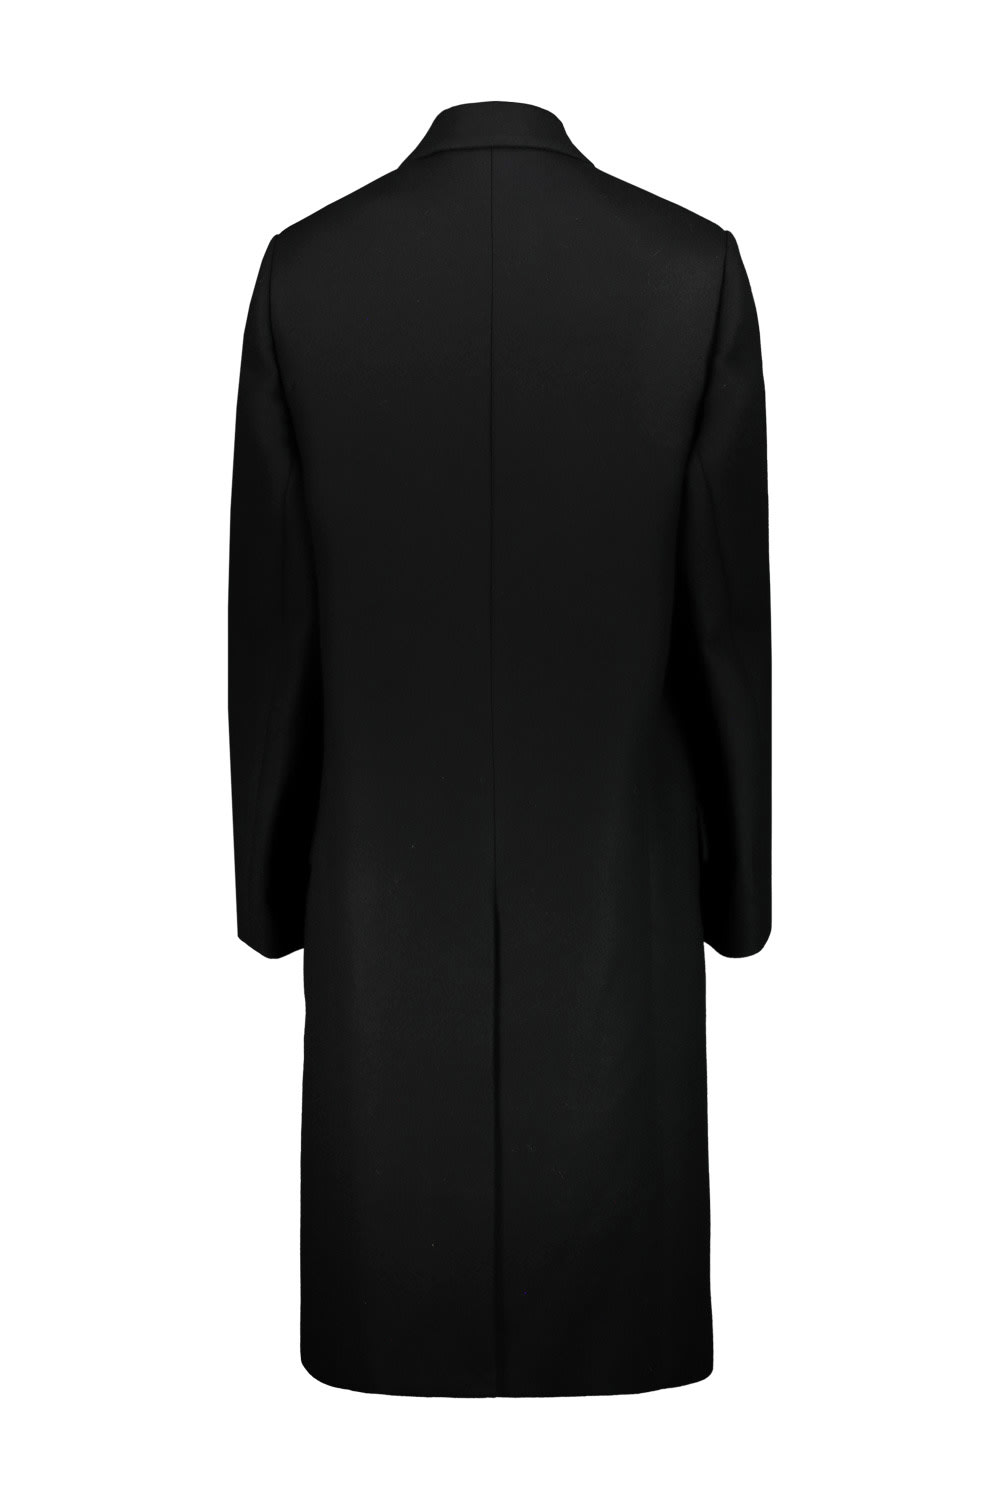 Shop Wardrobe.nyc Hailey Bieber Coat In Blk Black